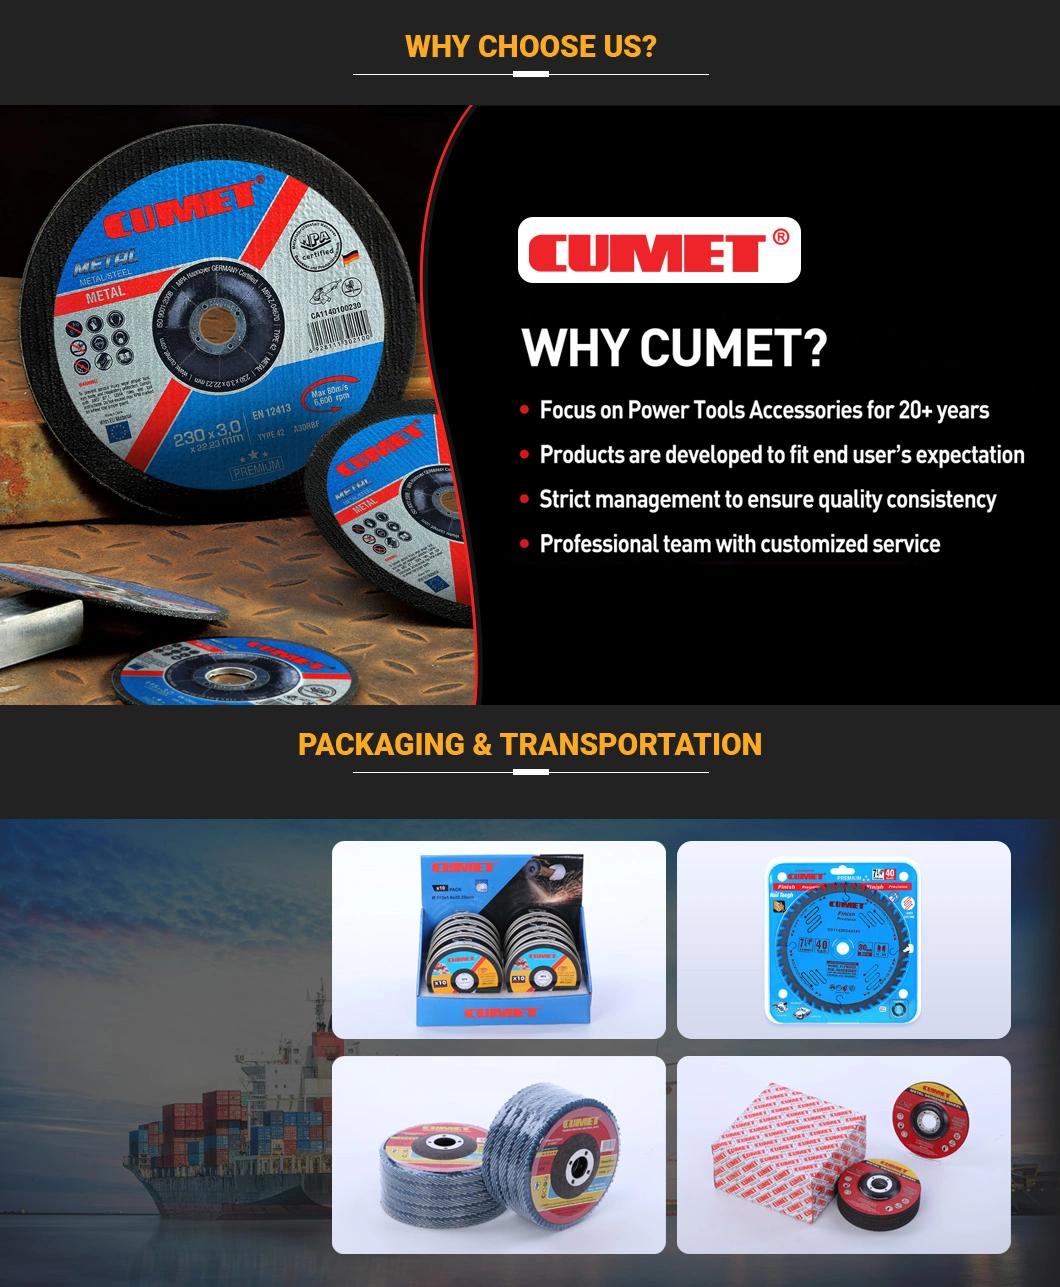 Aluminum Customized Cumet T41A-115X1.0X22.2mm Zhejiang Jinhua Abrasive Cutting Wheel